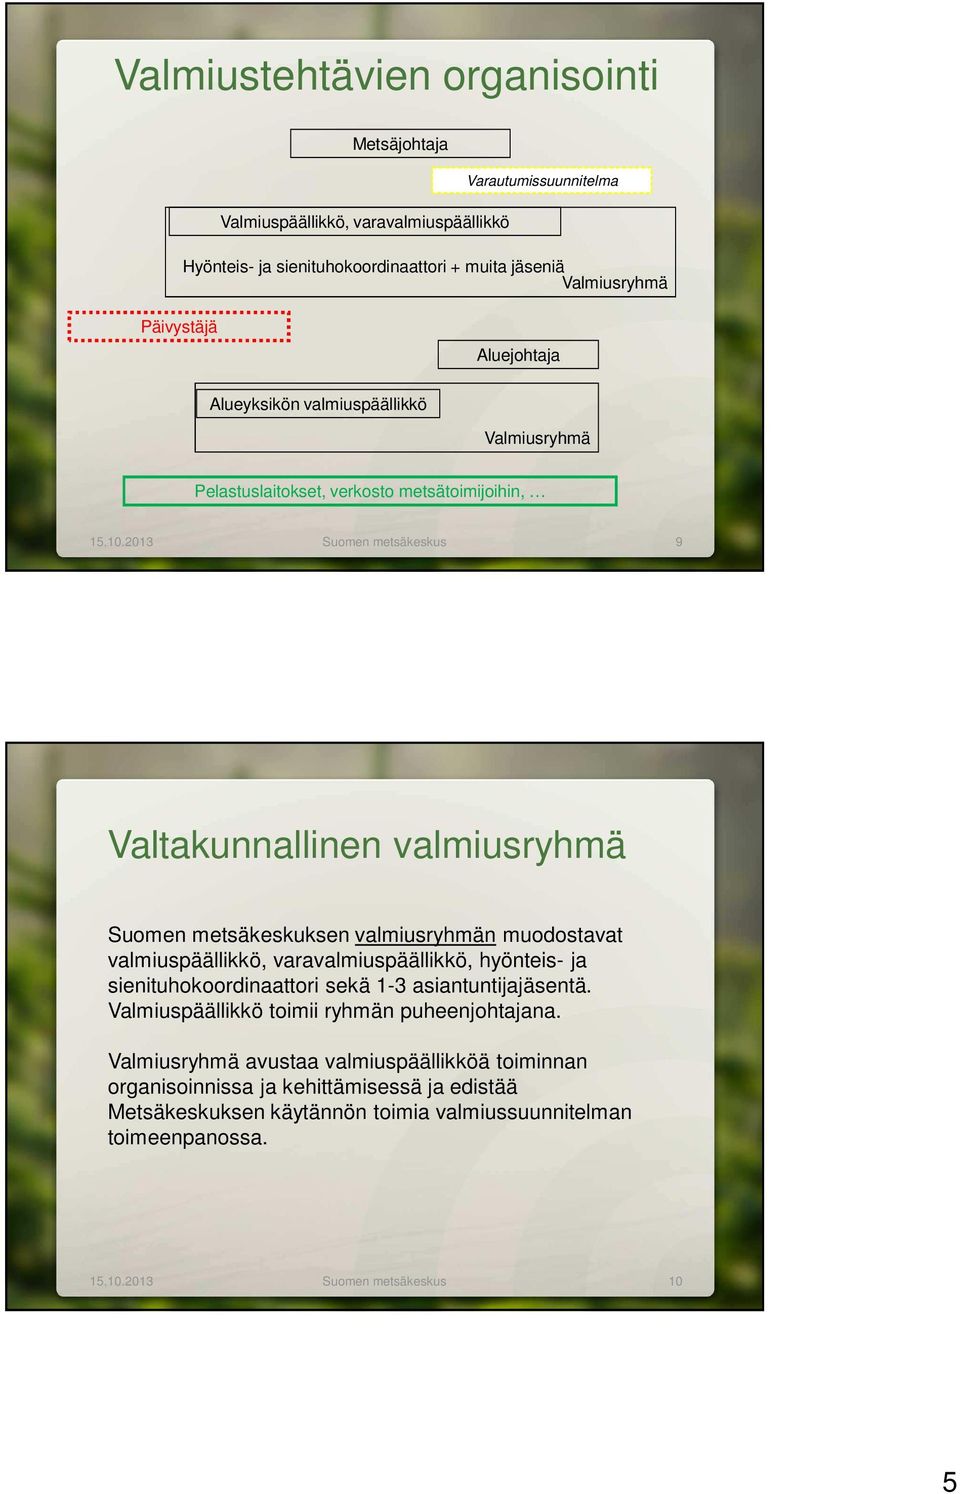 2013 Suomen metsäkeskus 9 Valtakunnallinen valmiusryhmä Suomen metsäkeskuksen valmiusryhmän muodostavat valmiuspäällikkö, varavalmiuspäällikkö, hyönteis- ja sienituhokoordinaattori sekä